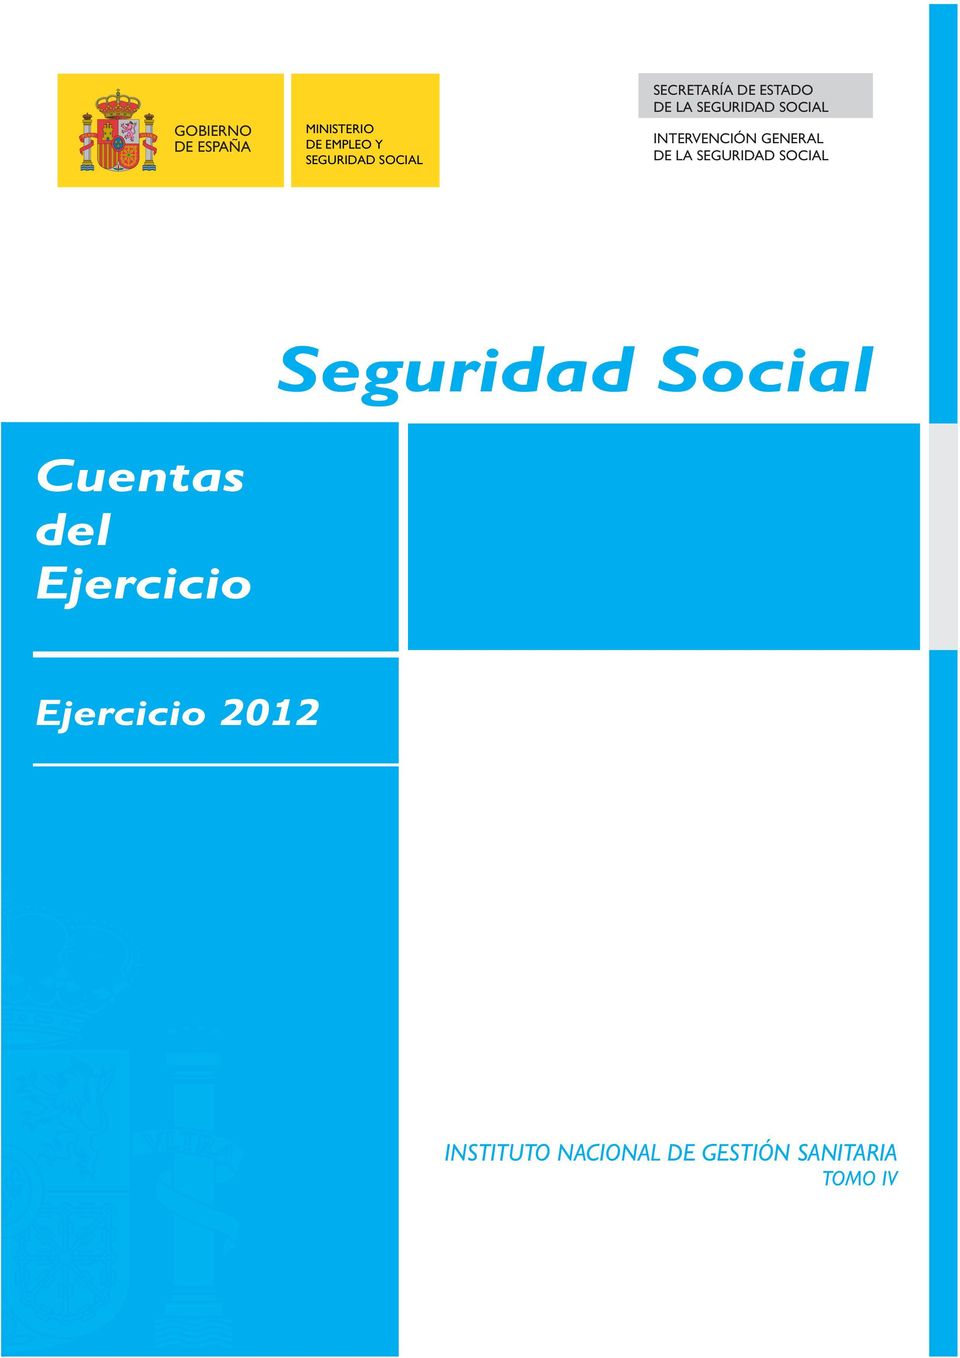 GENERAL DE LA SEGURIDAD SOCIAL Seguridad Social Cuentas del